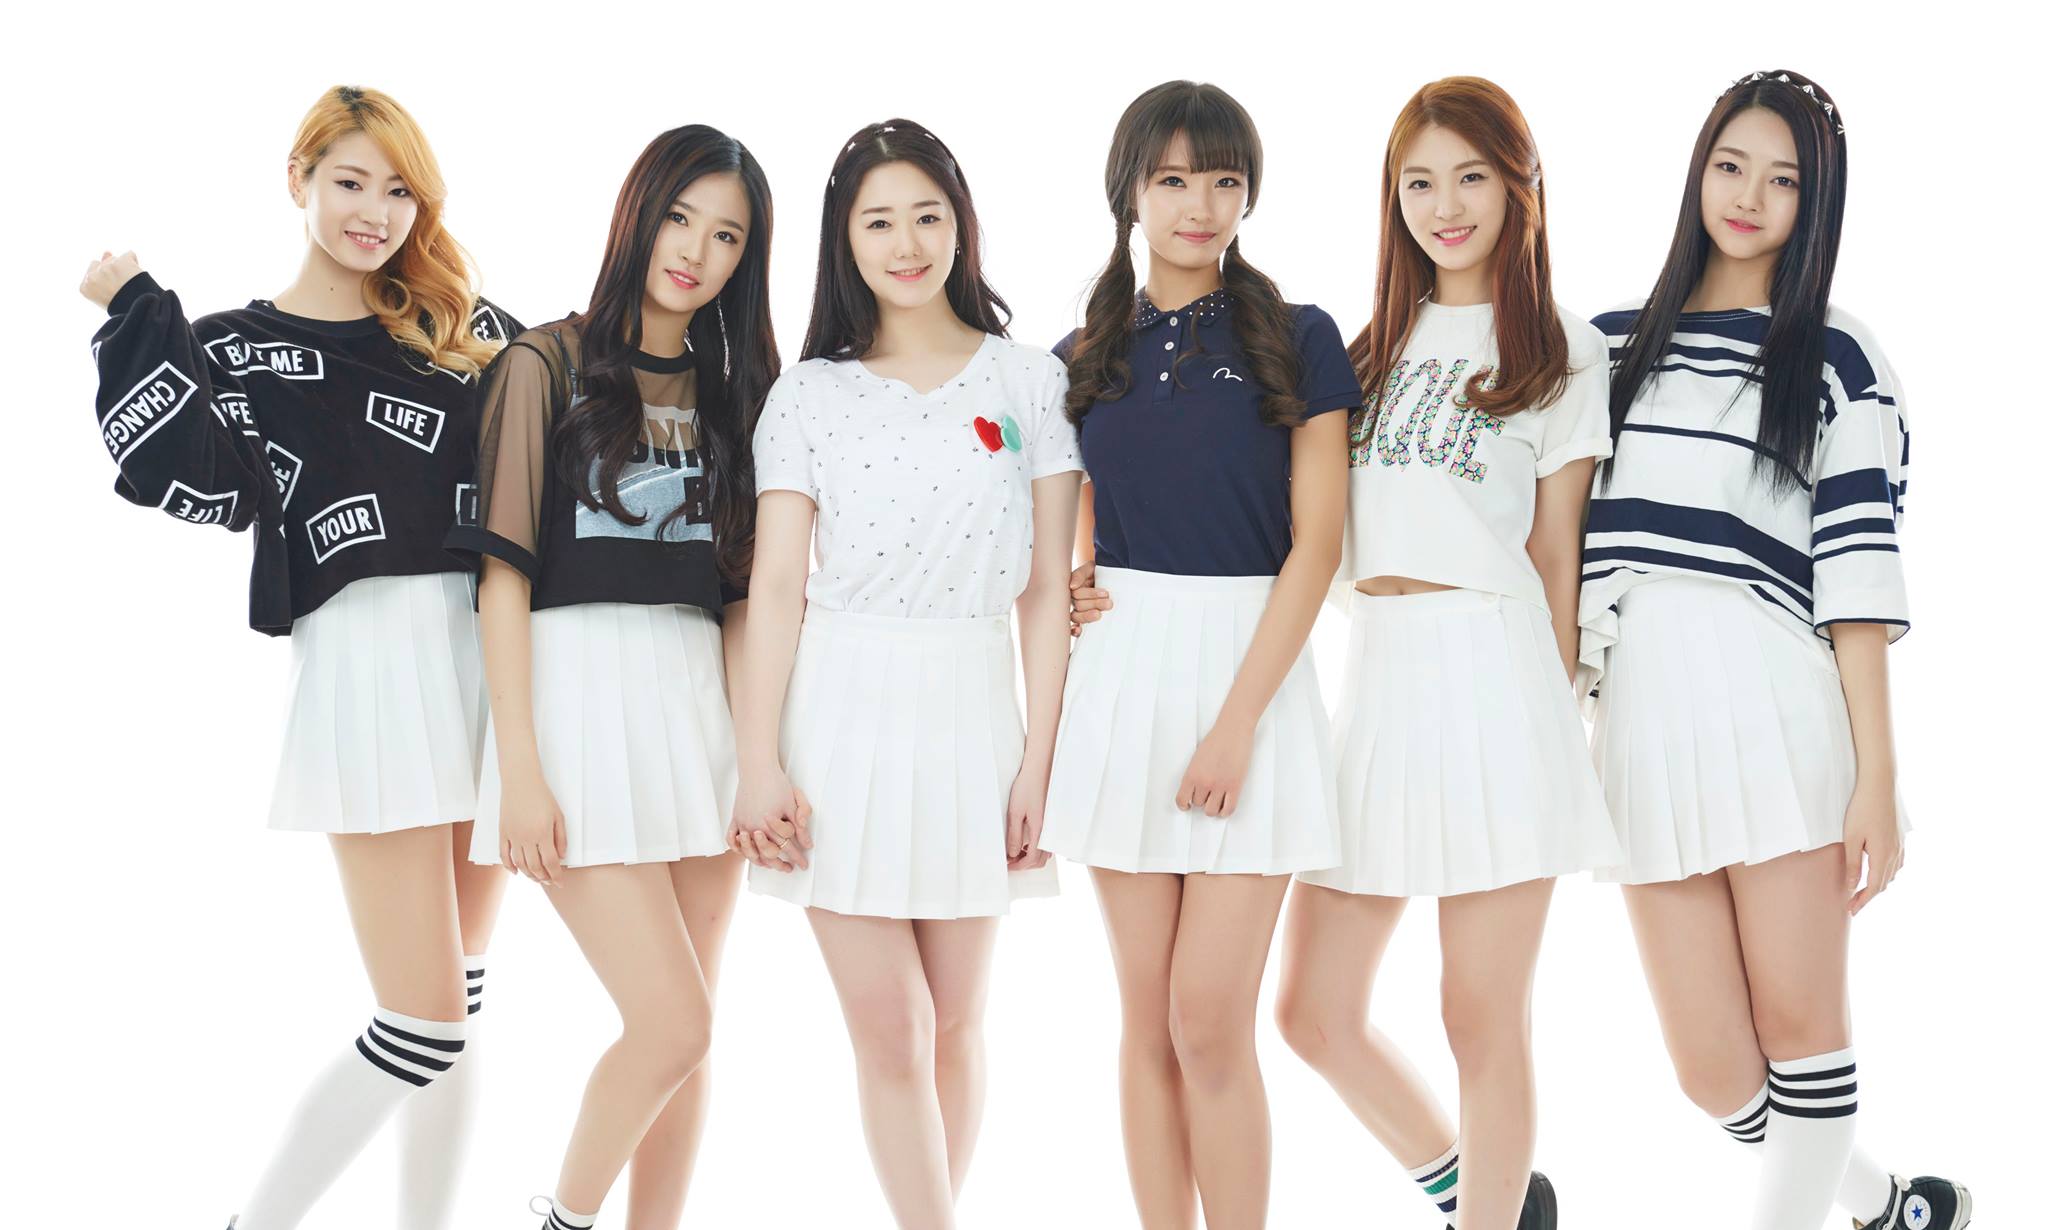 Korean Girl Group wallpaper, Music, HQ Korean Girl Group pictureK Wallpaper 2019